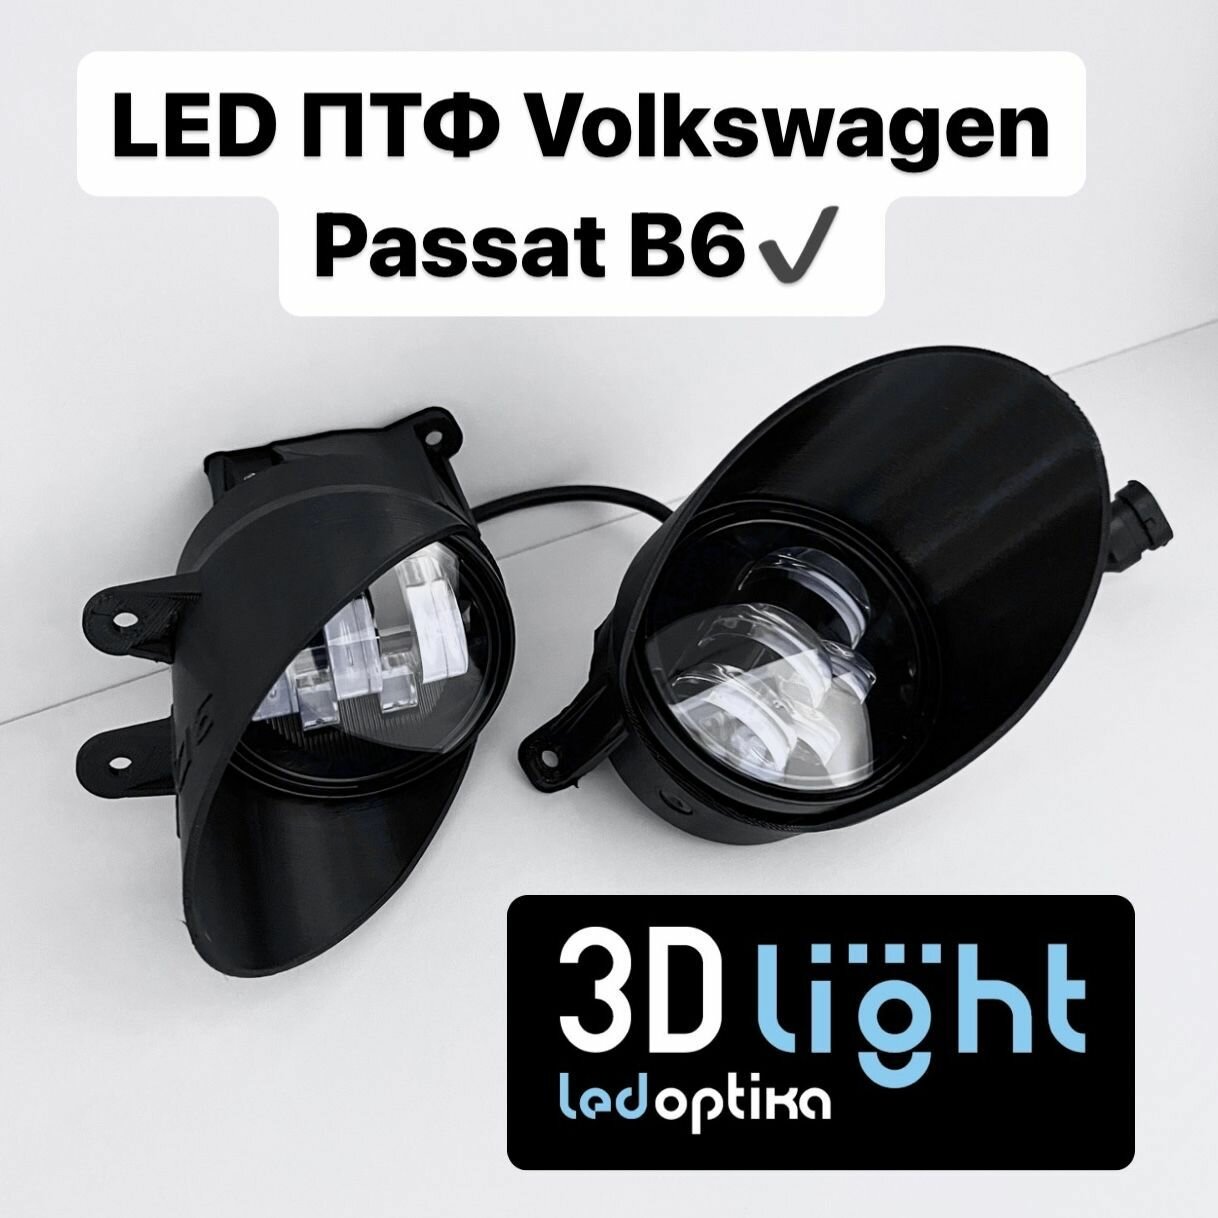 Противотуманные фары LED светодиодные 3D-Light для Volkswagen Passat B6 (Пассат Б6) Однорежимные белый свет 5 линз 55w